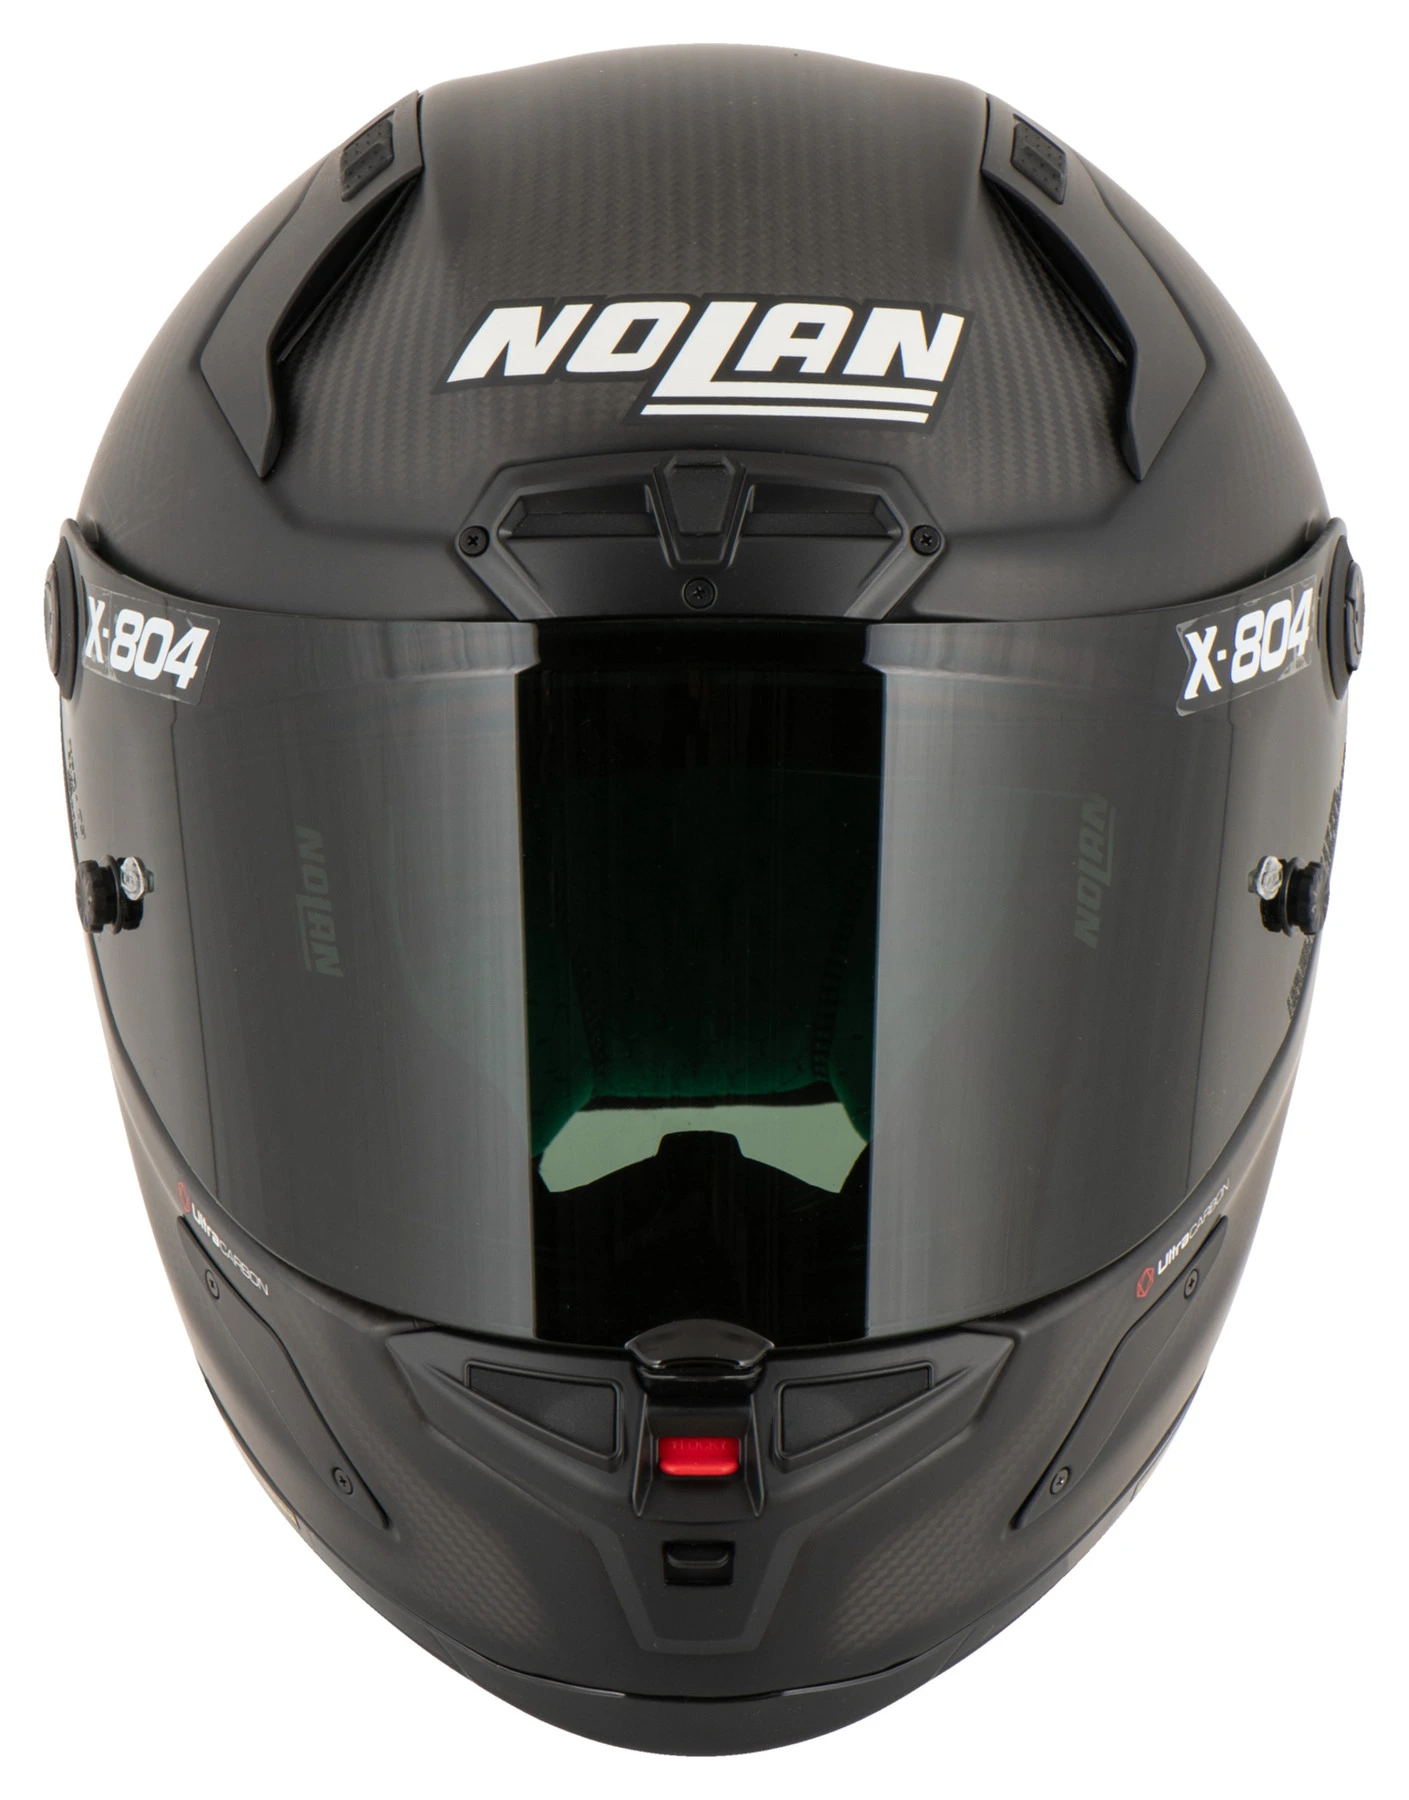 NOLAN X-804 RS